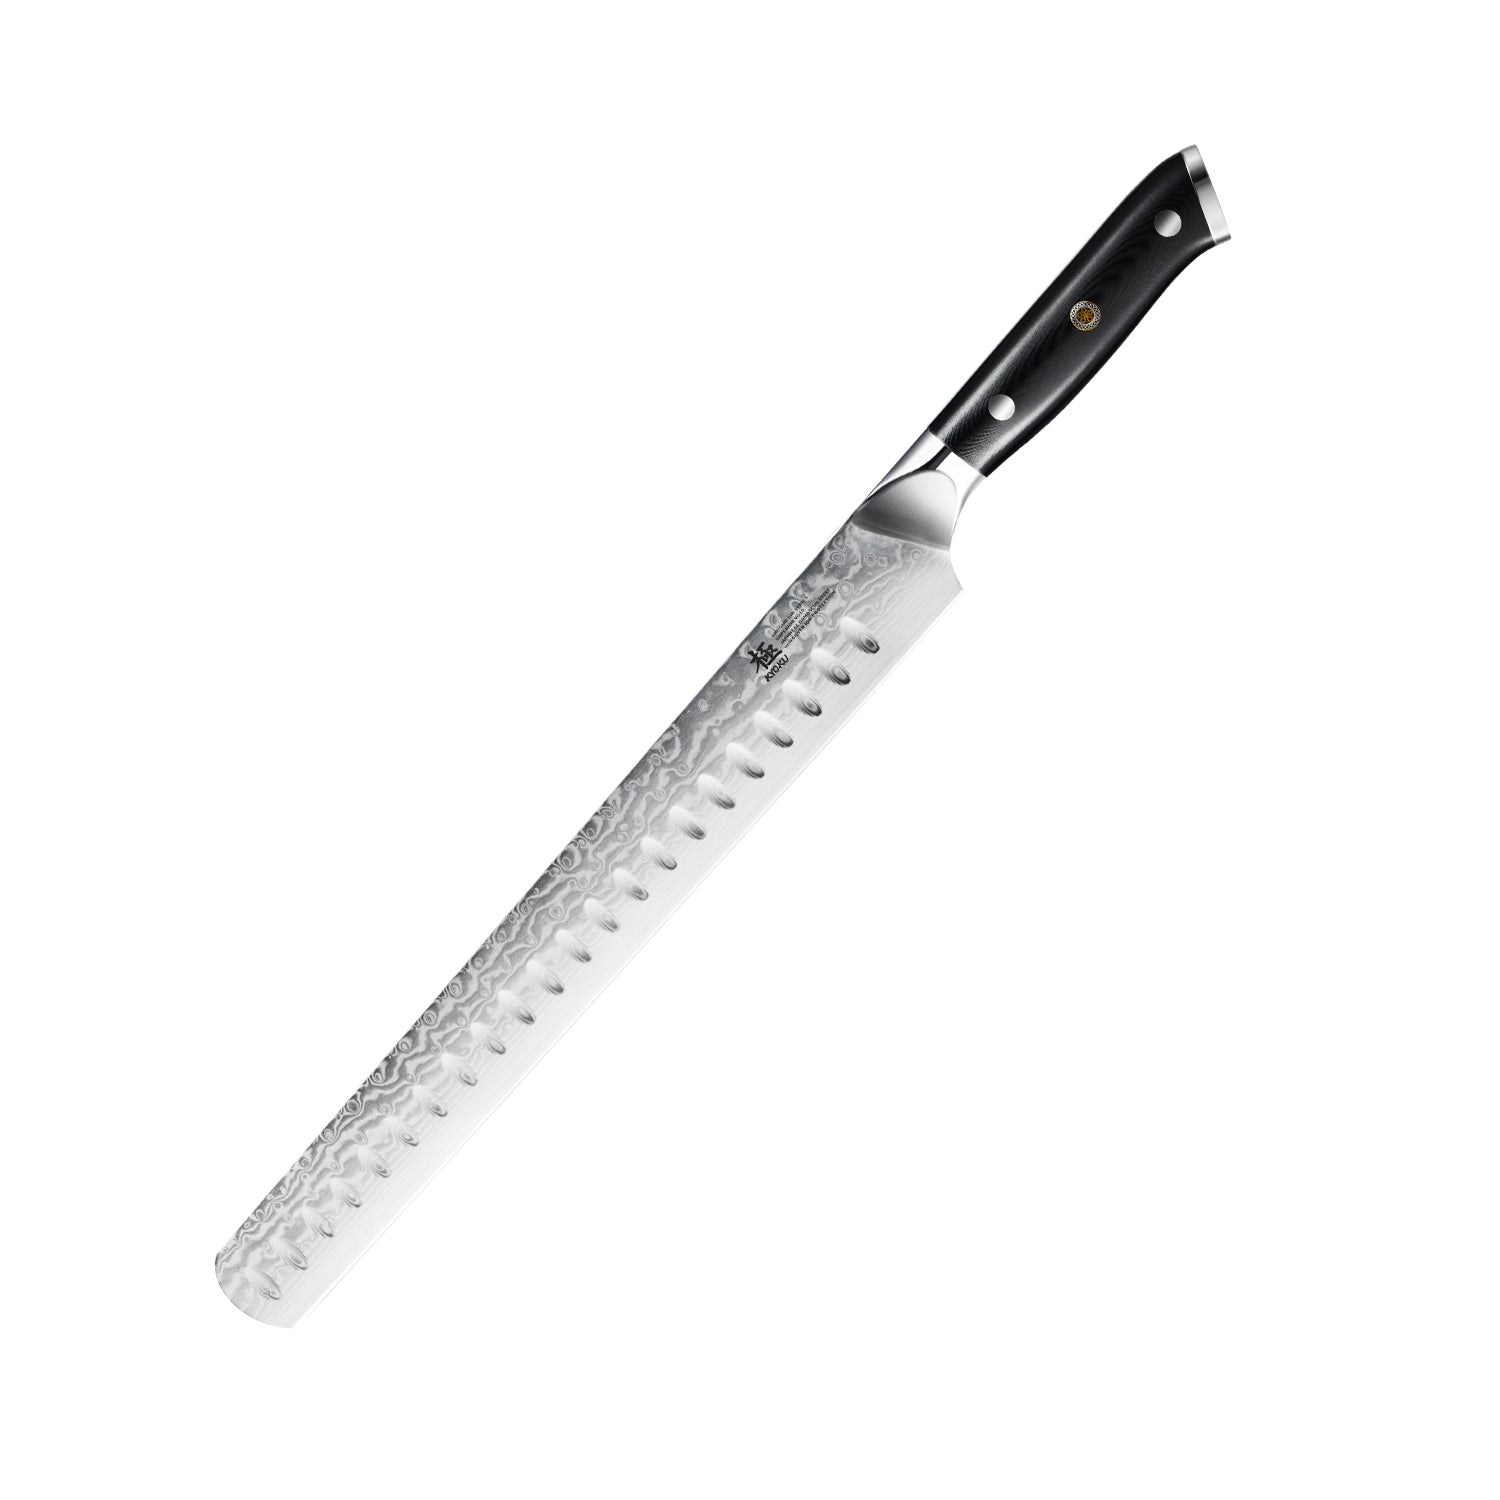 https://kyokuknives.com/cdn/shop/files/12---Brisket-Slicing-Knife---Gin-Series-Kyoku-Knives-1697013937937.jpg?v=1697617321